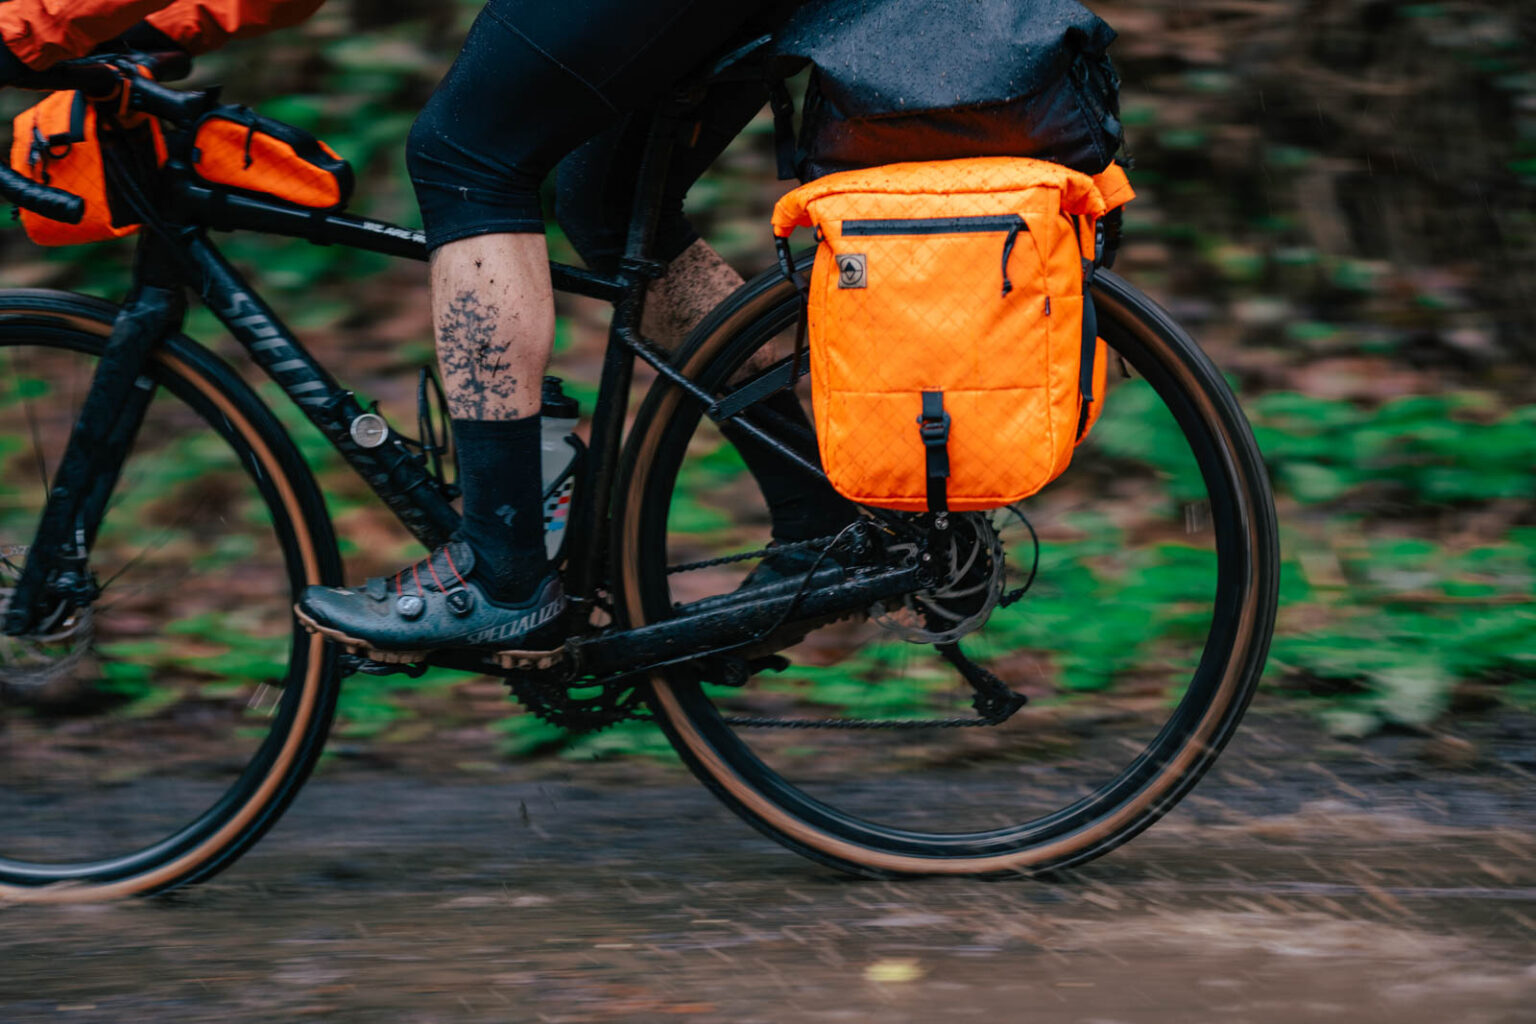 North St. Bikepacking bags, rider w orange pannier